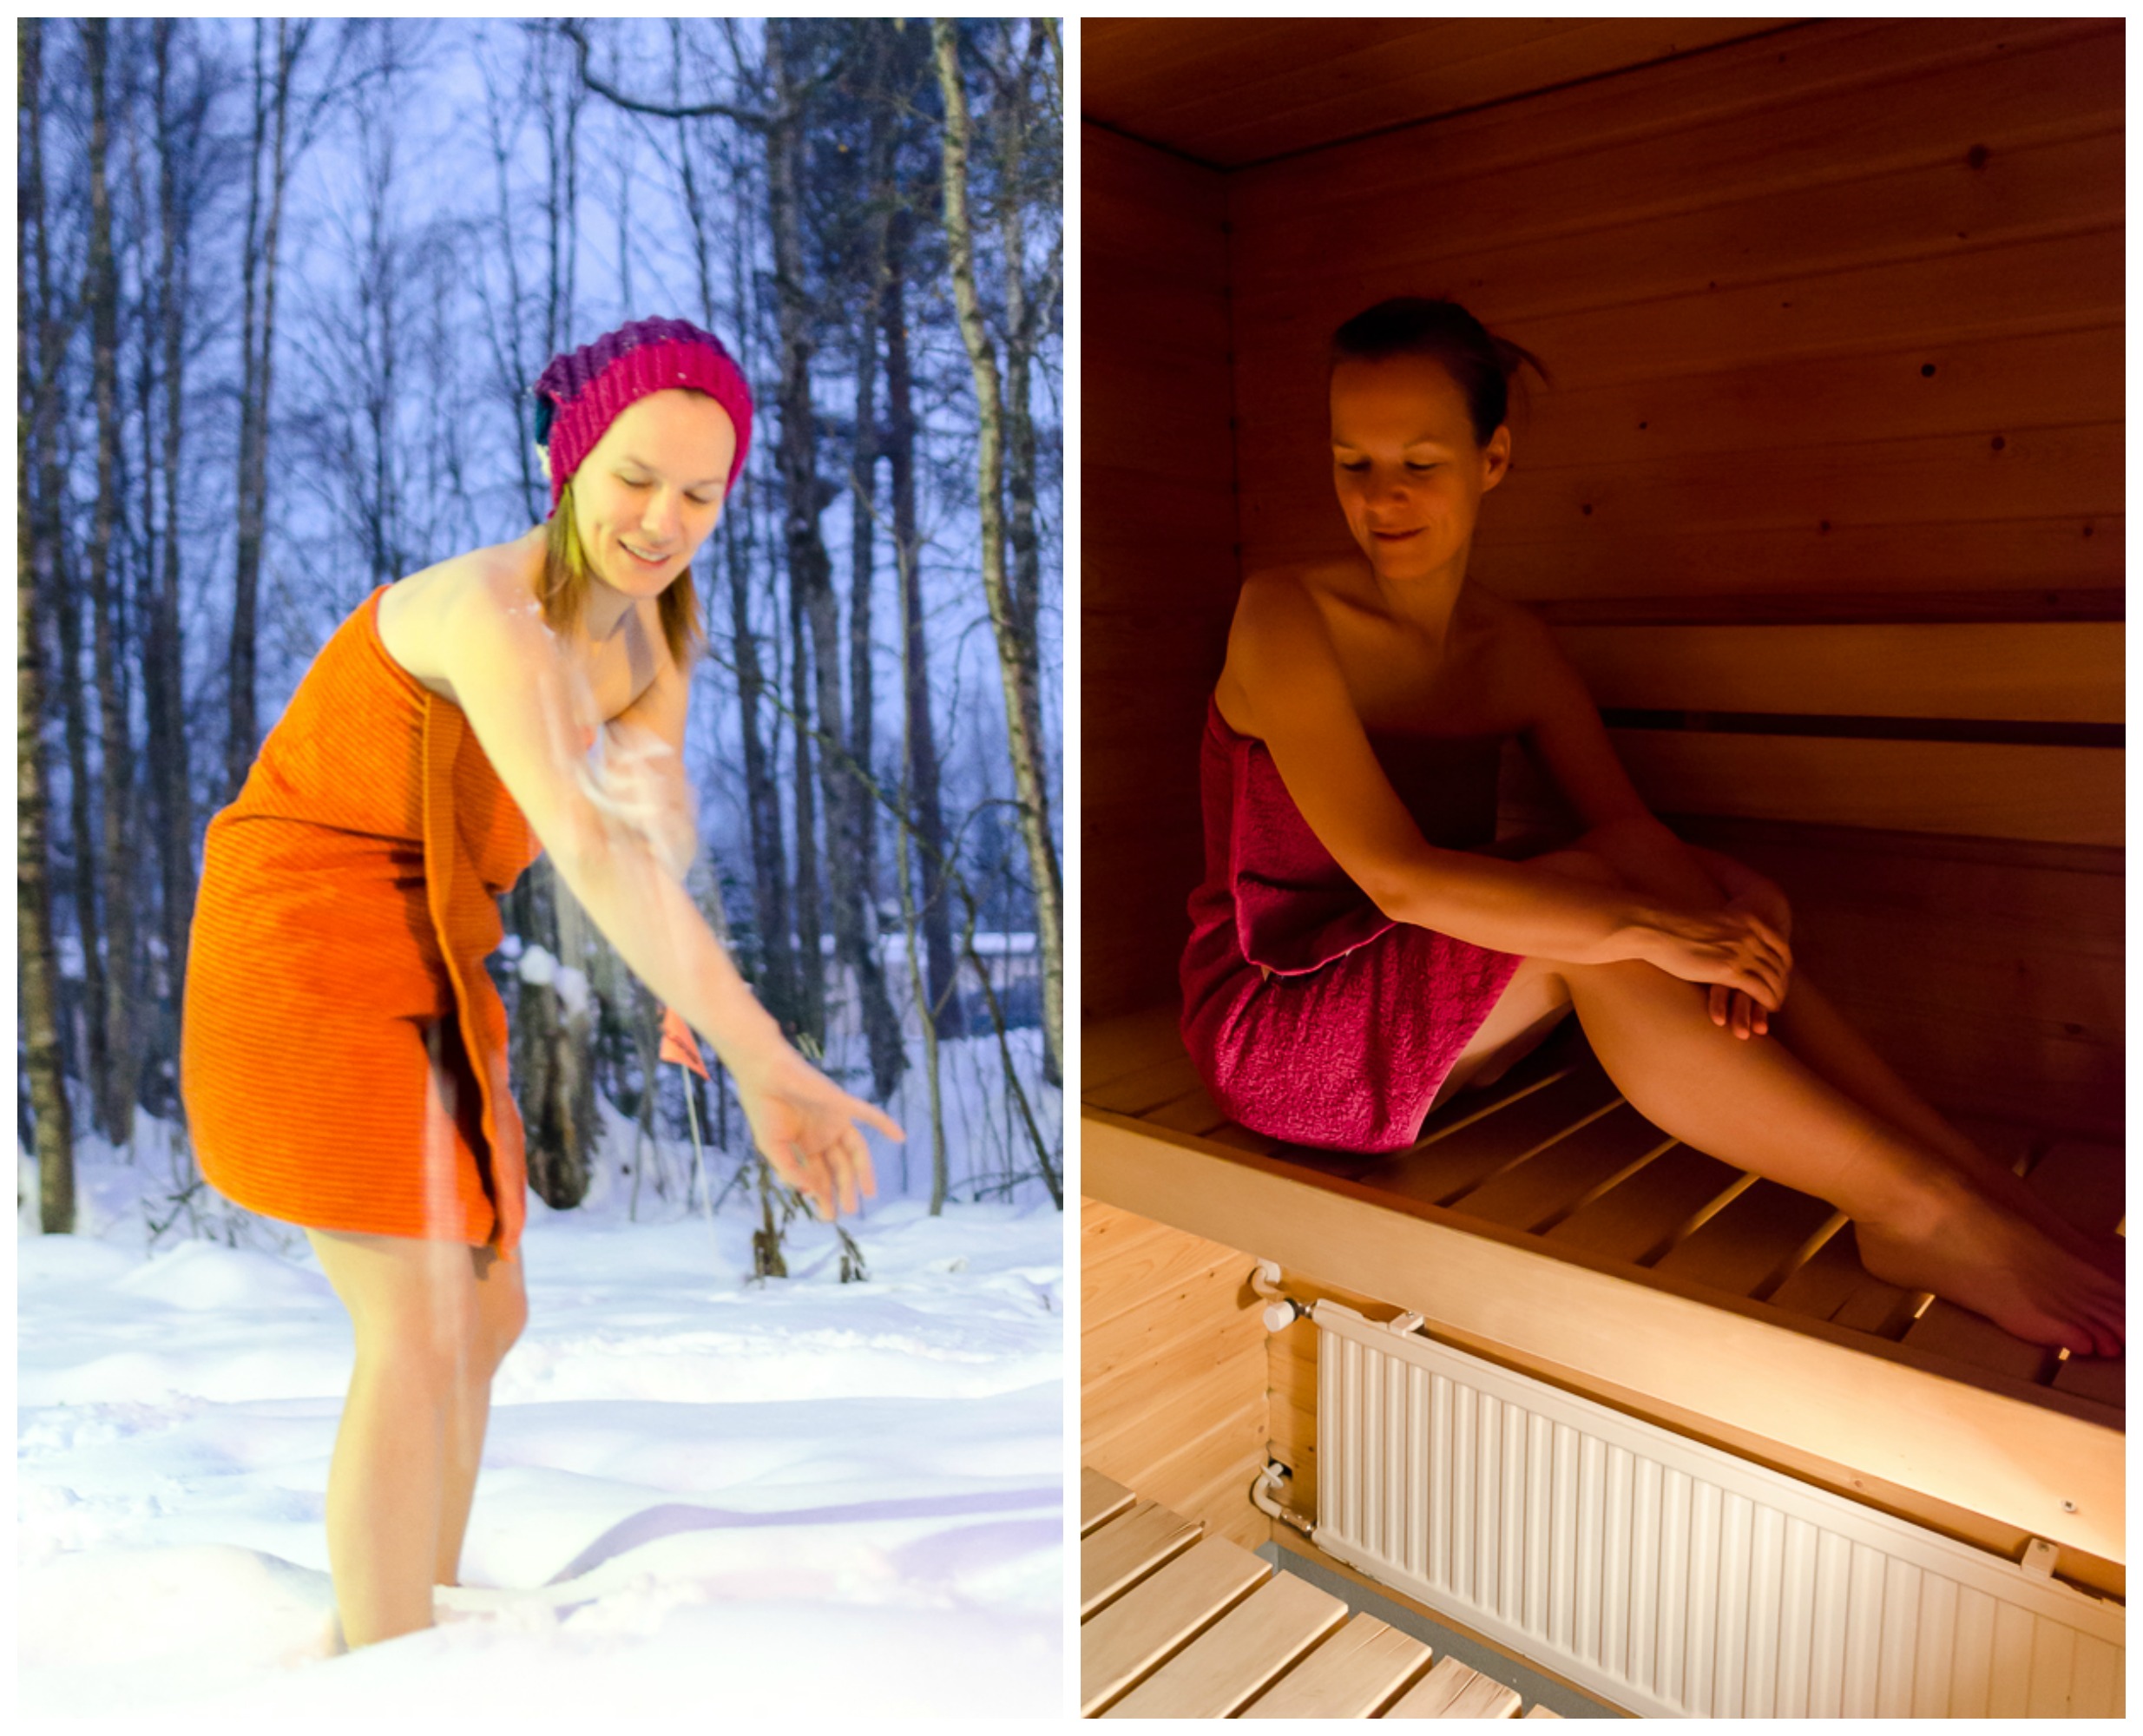 männer in der sauna nackt